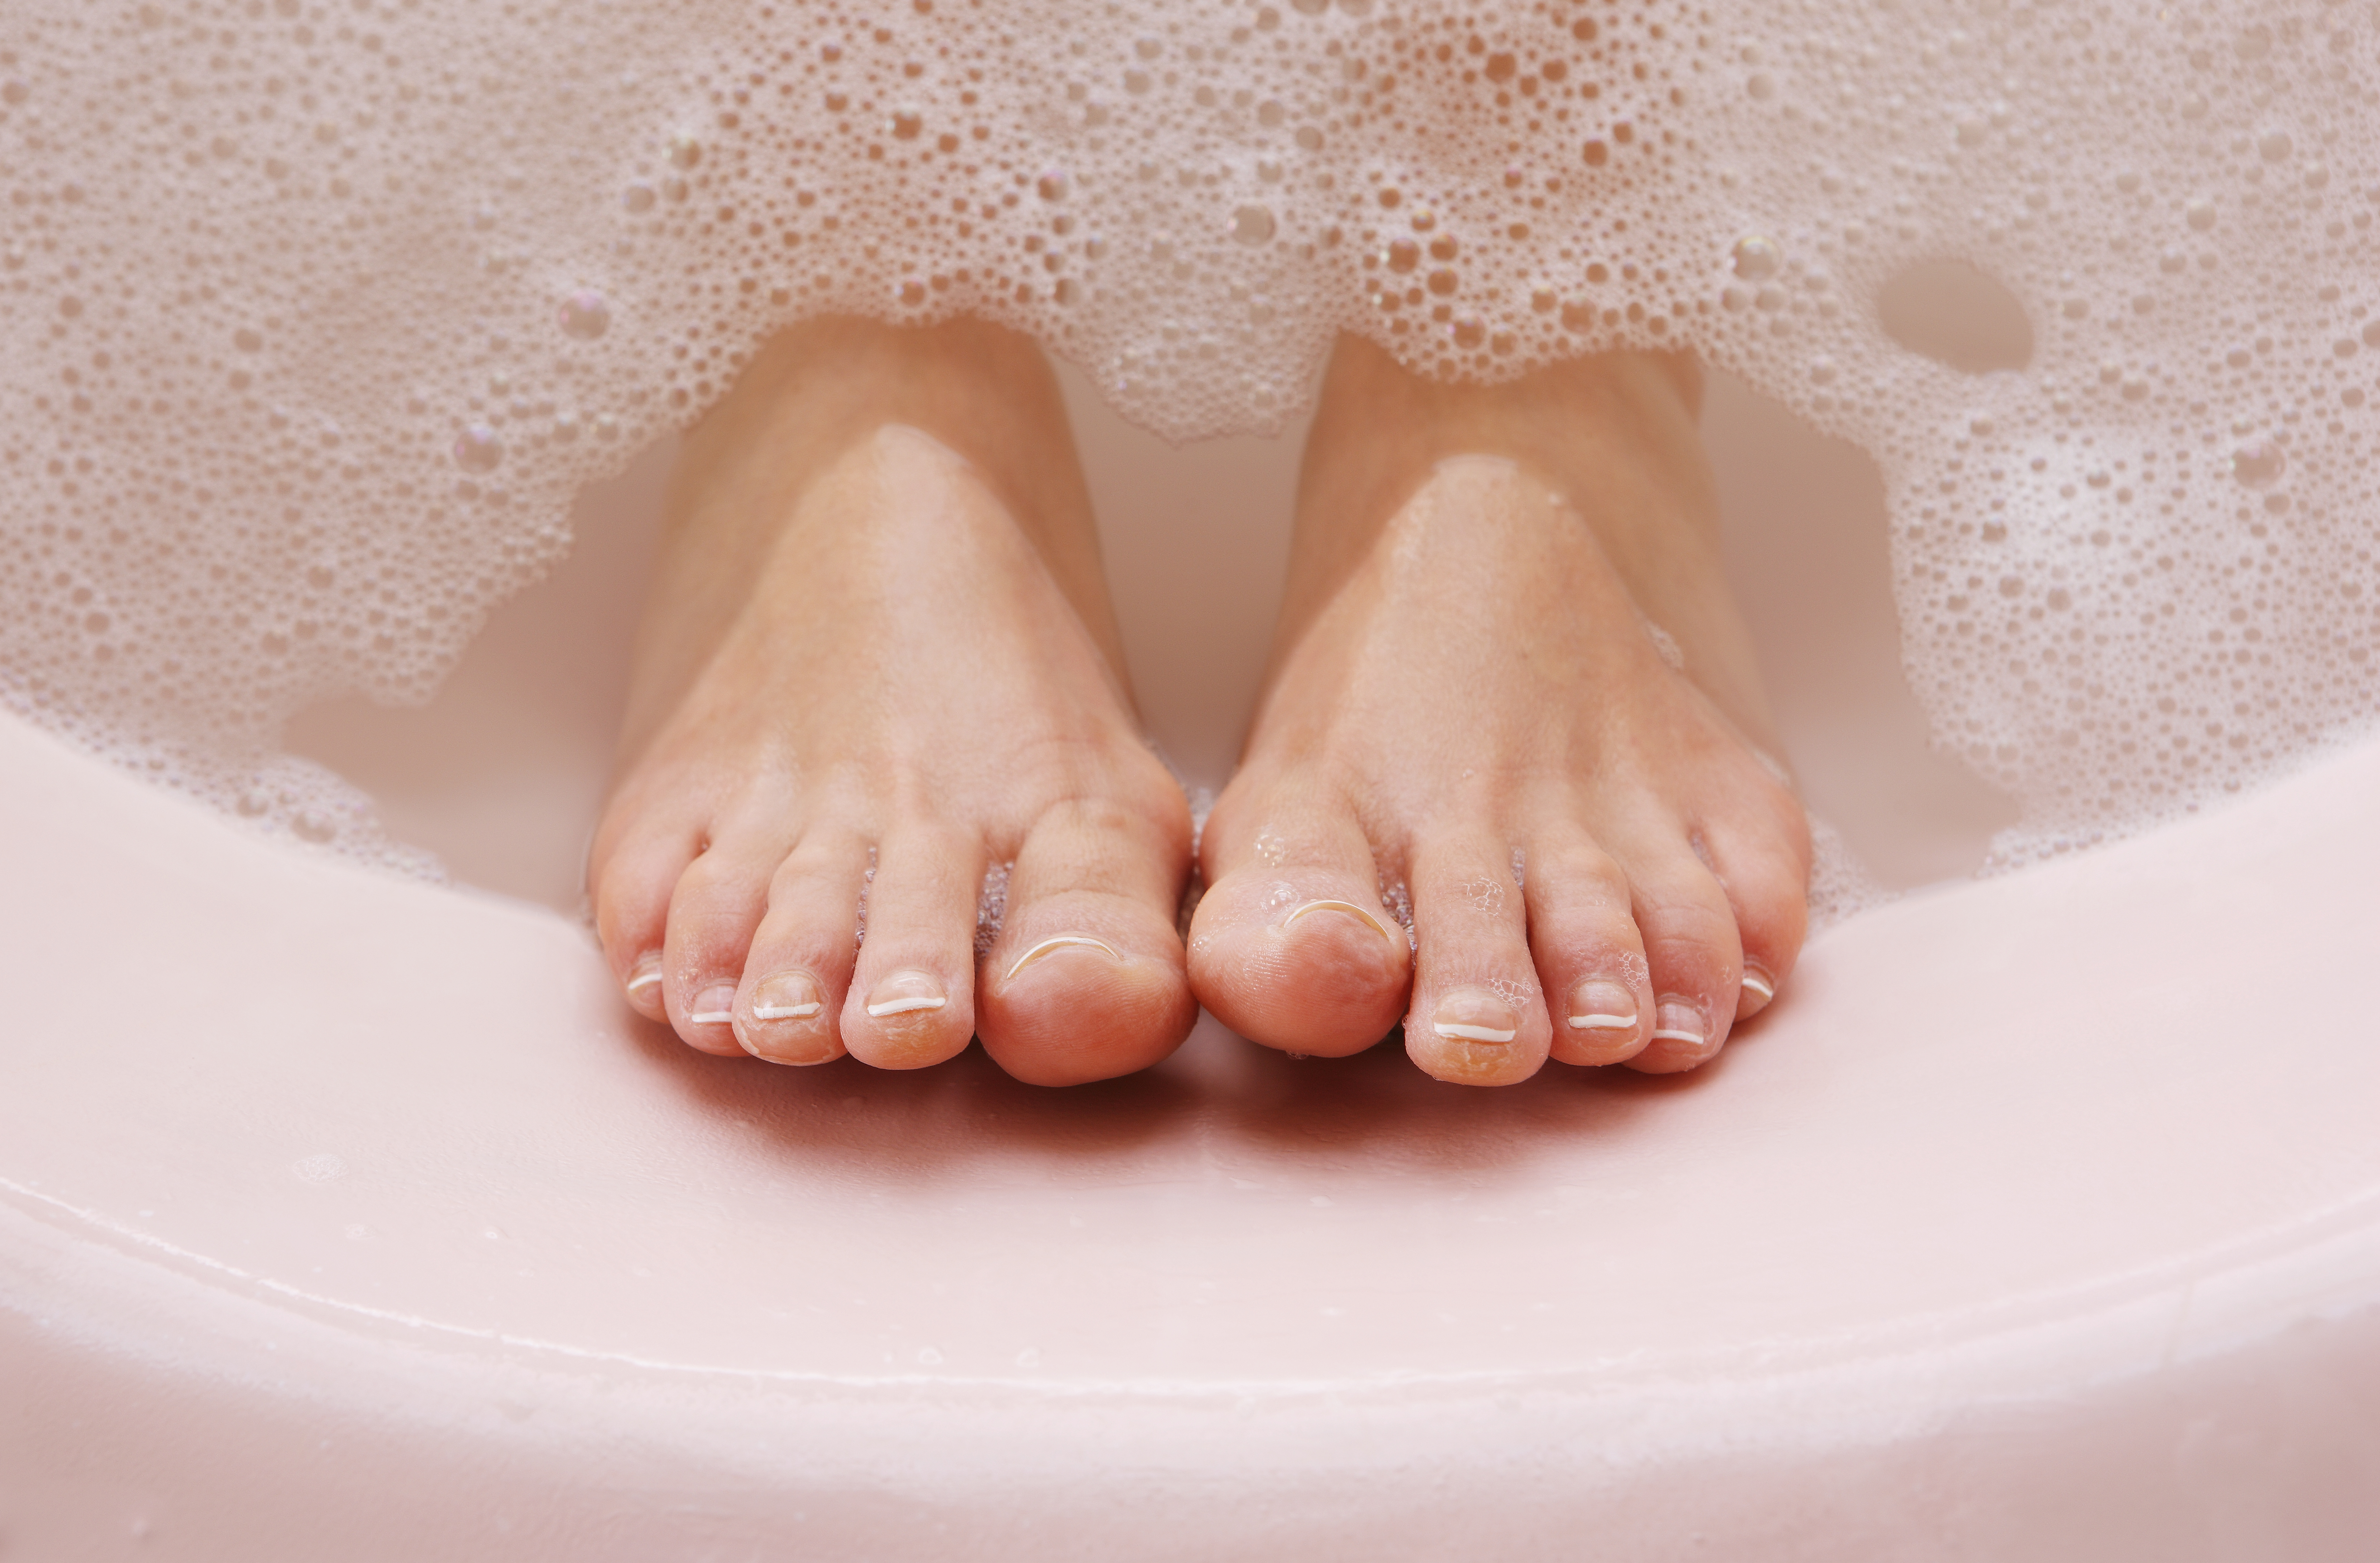 foot soak to remove dead skin and calluses